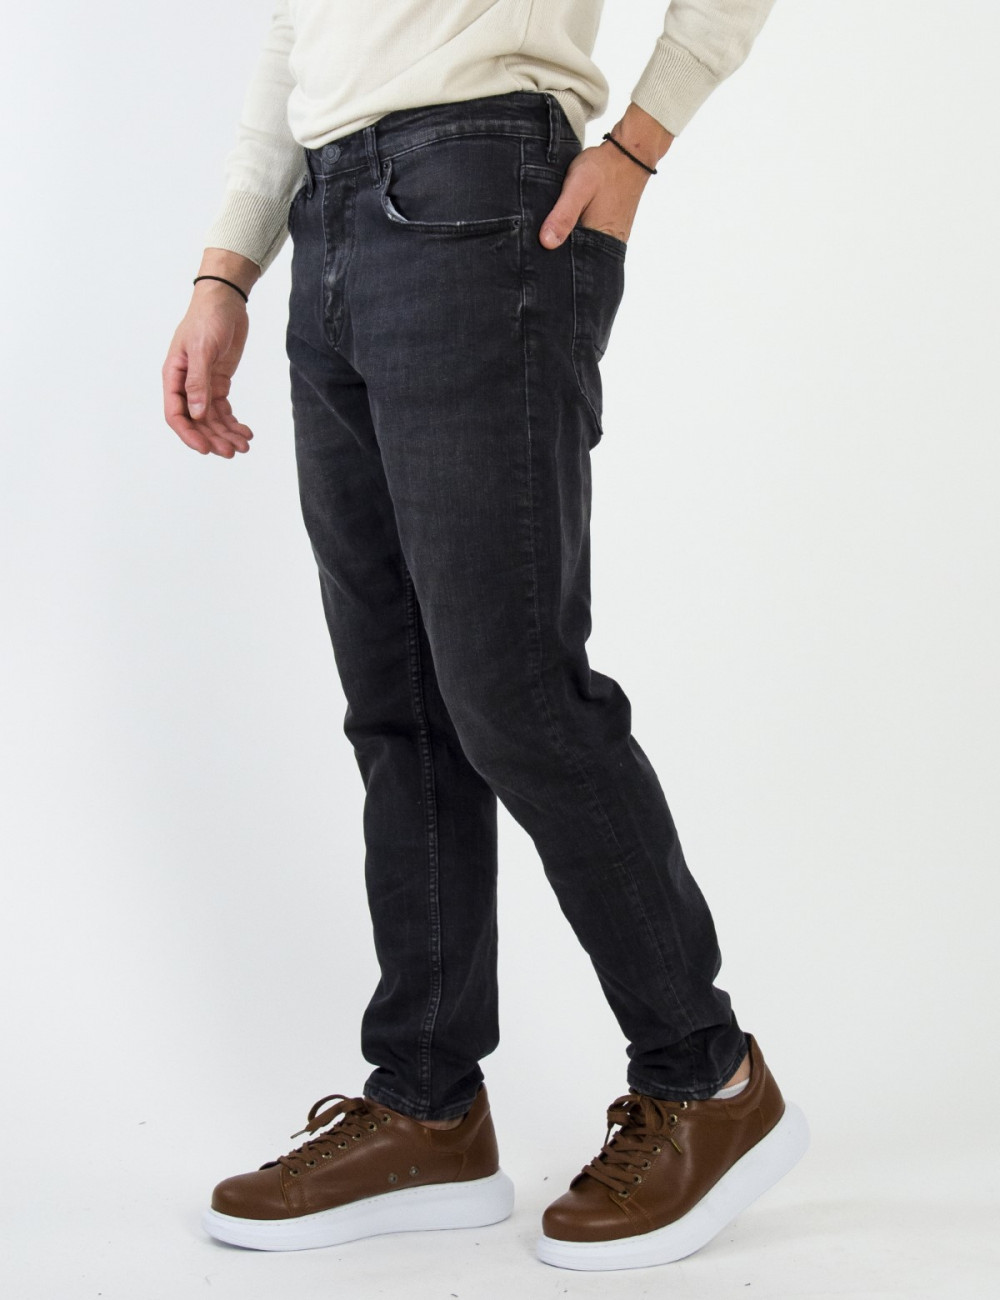 Ανδρικό Μαύρο Τζιν Boyfriend παντελόνι με ελαφρύ ξέβαμμα 4841